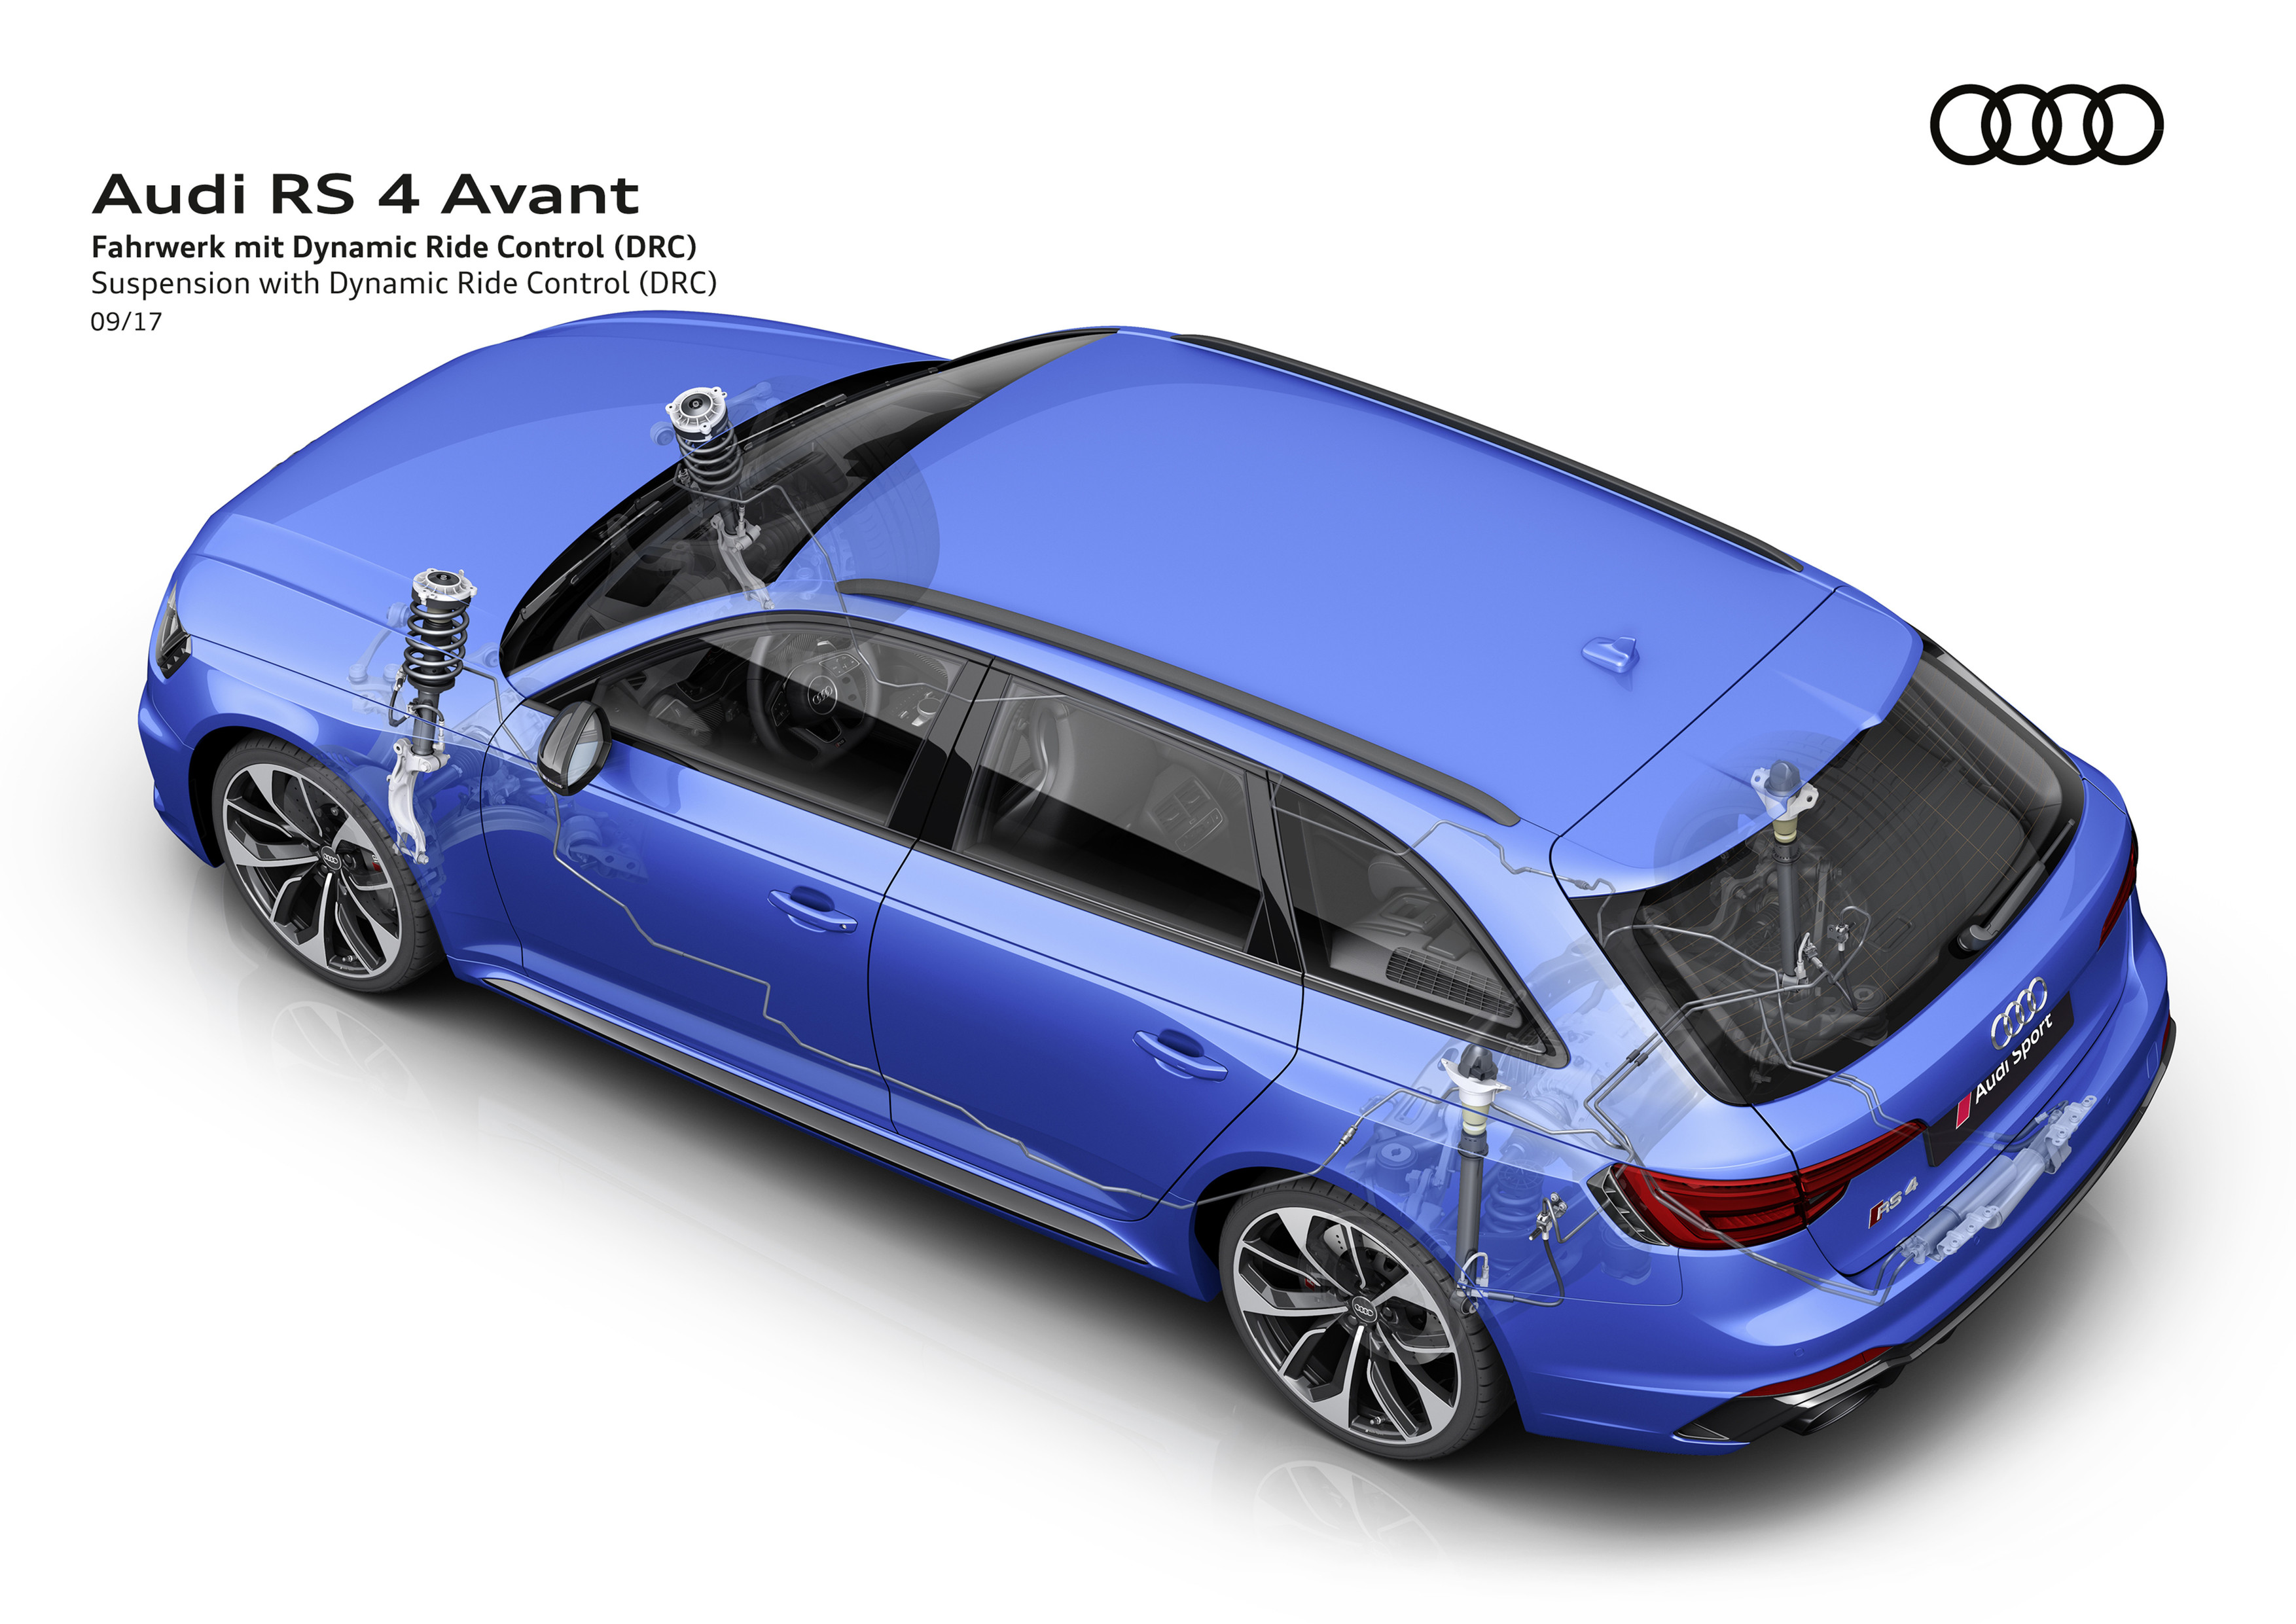 Audi RS4 Avant exterior model